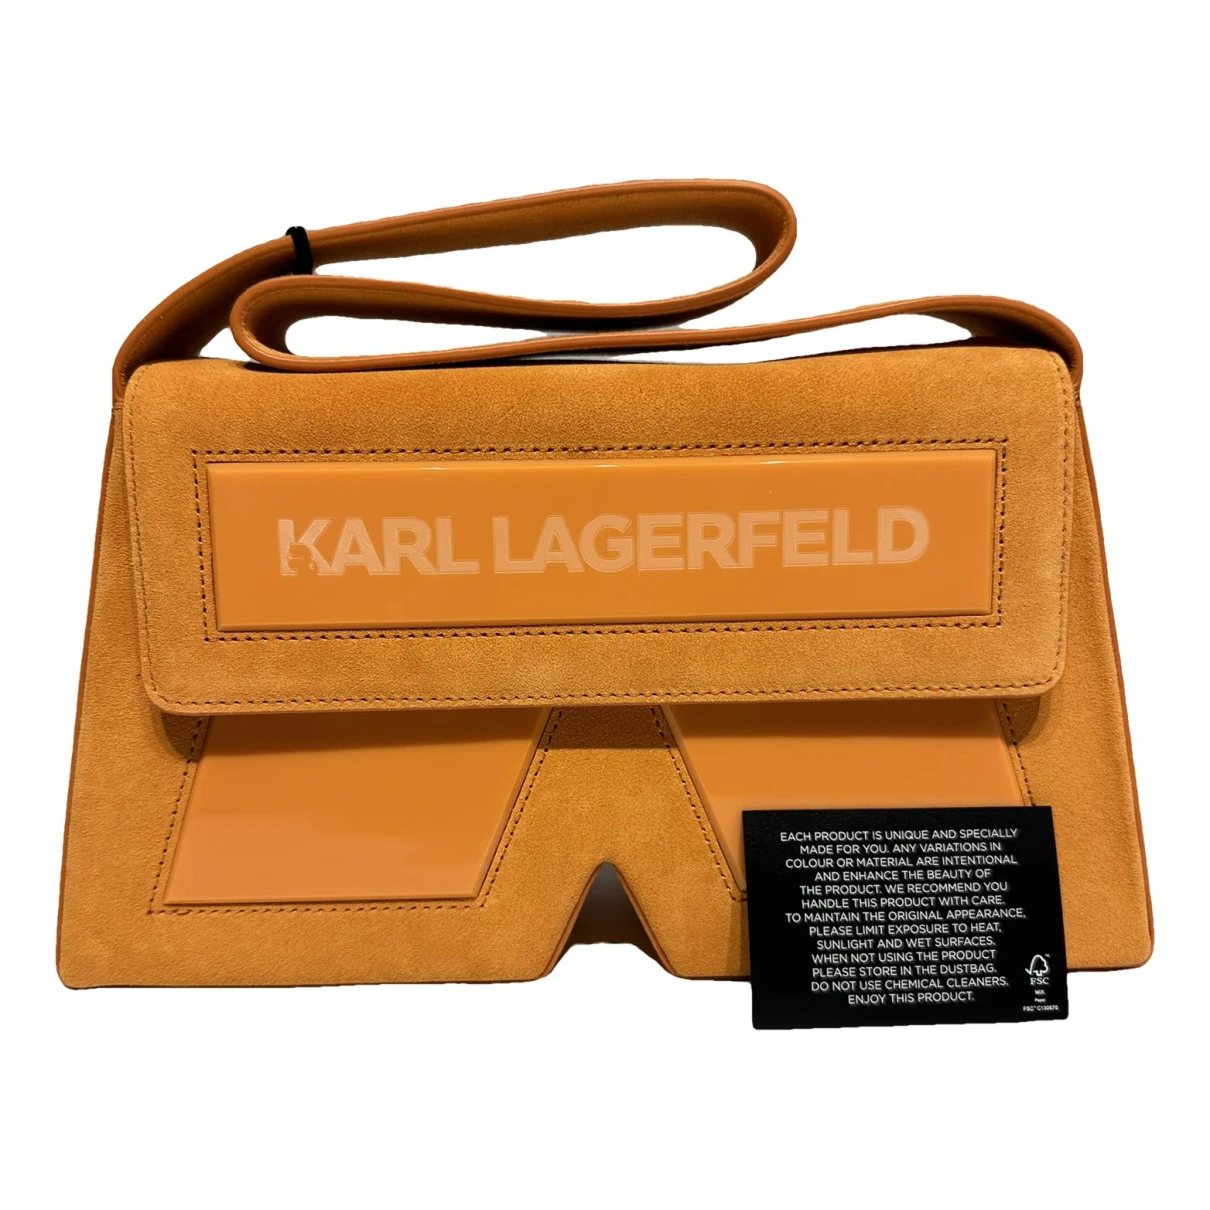 Pre-owned Karl Lagerfeld Leather Handbag In Orange